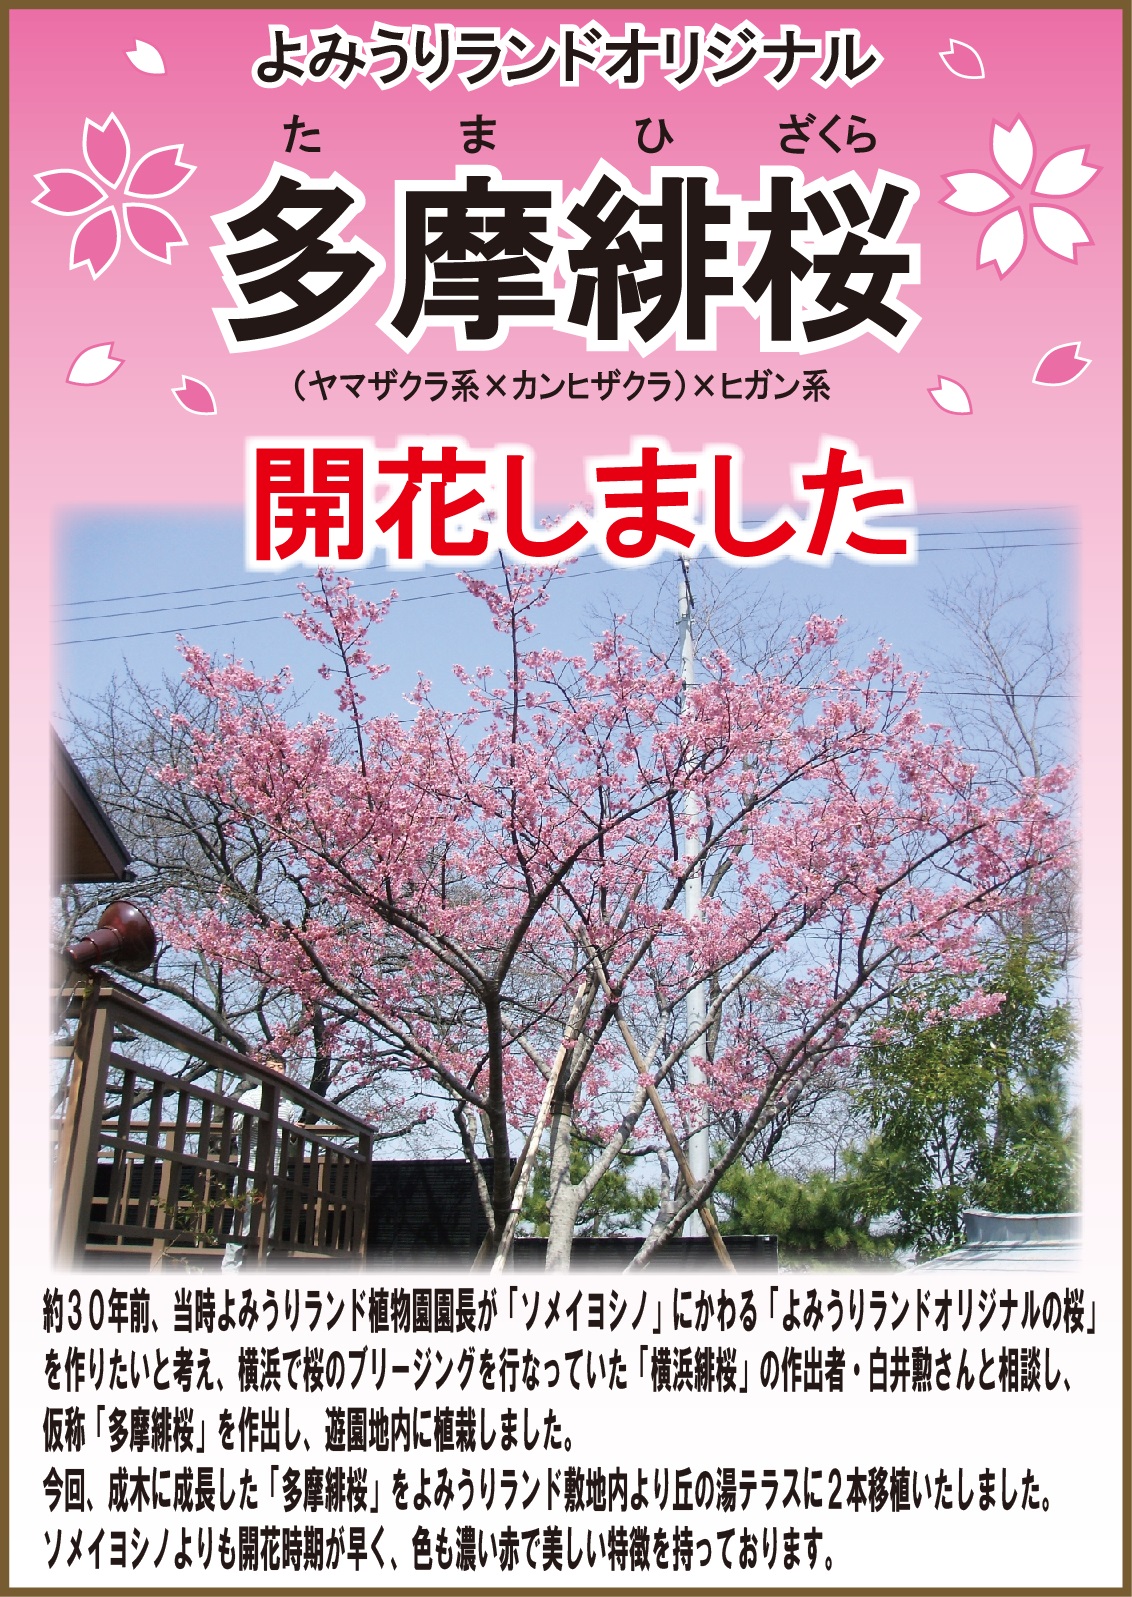 『 多摩緋桜 』 開花しました！ 詳細